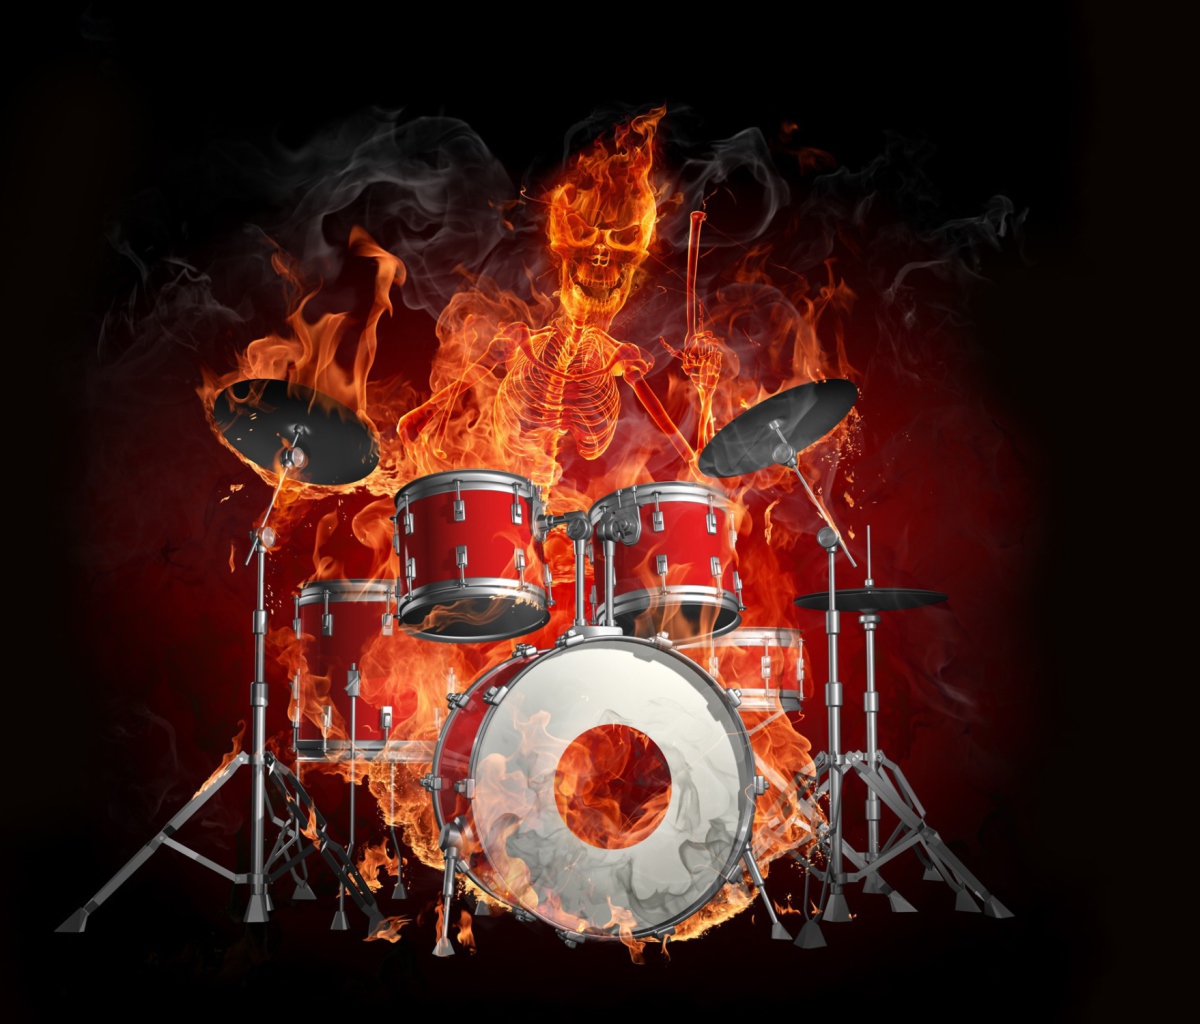 Das Fire Drummer Wallpaper 1200x1024